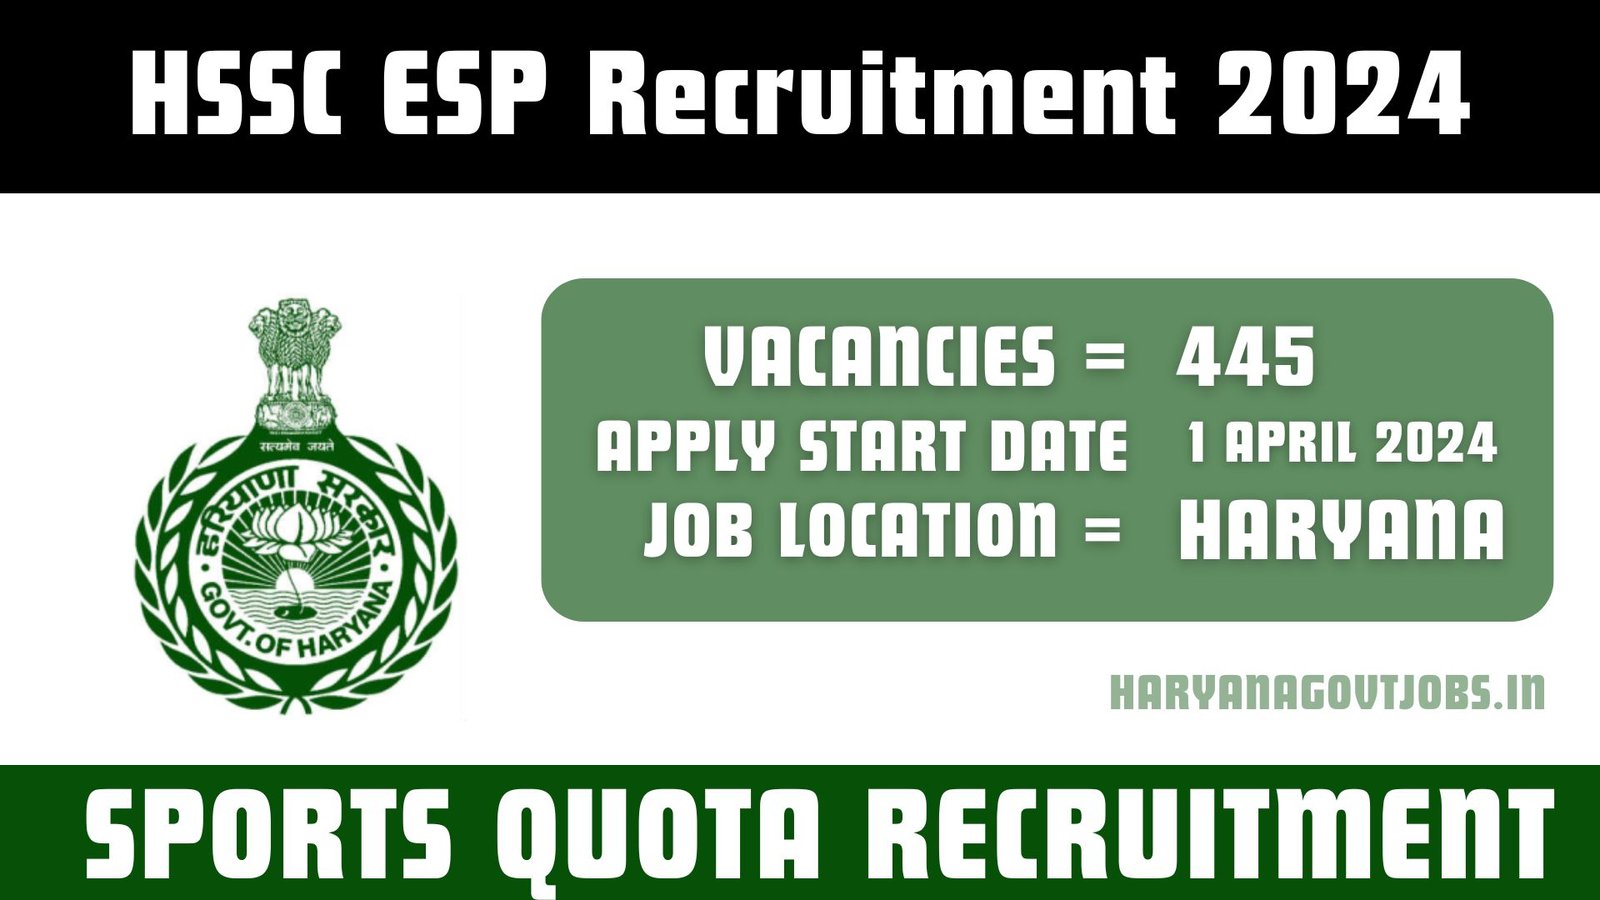 HSSC ESP Recruitment 2024 Overview